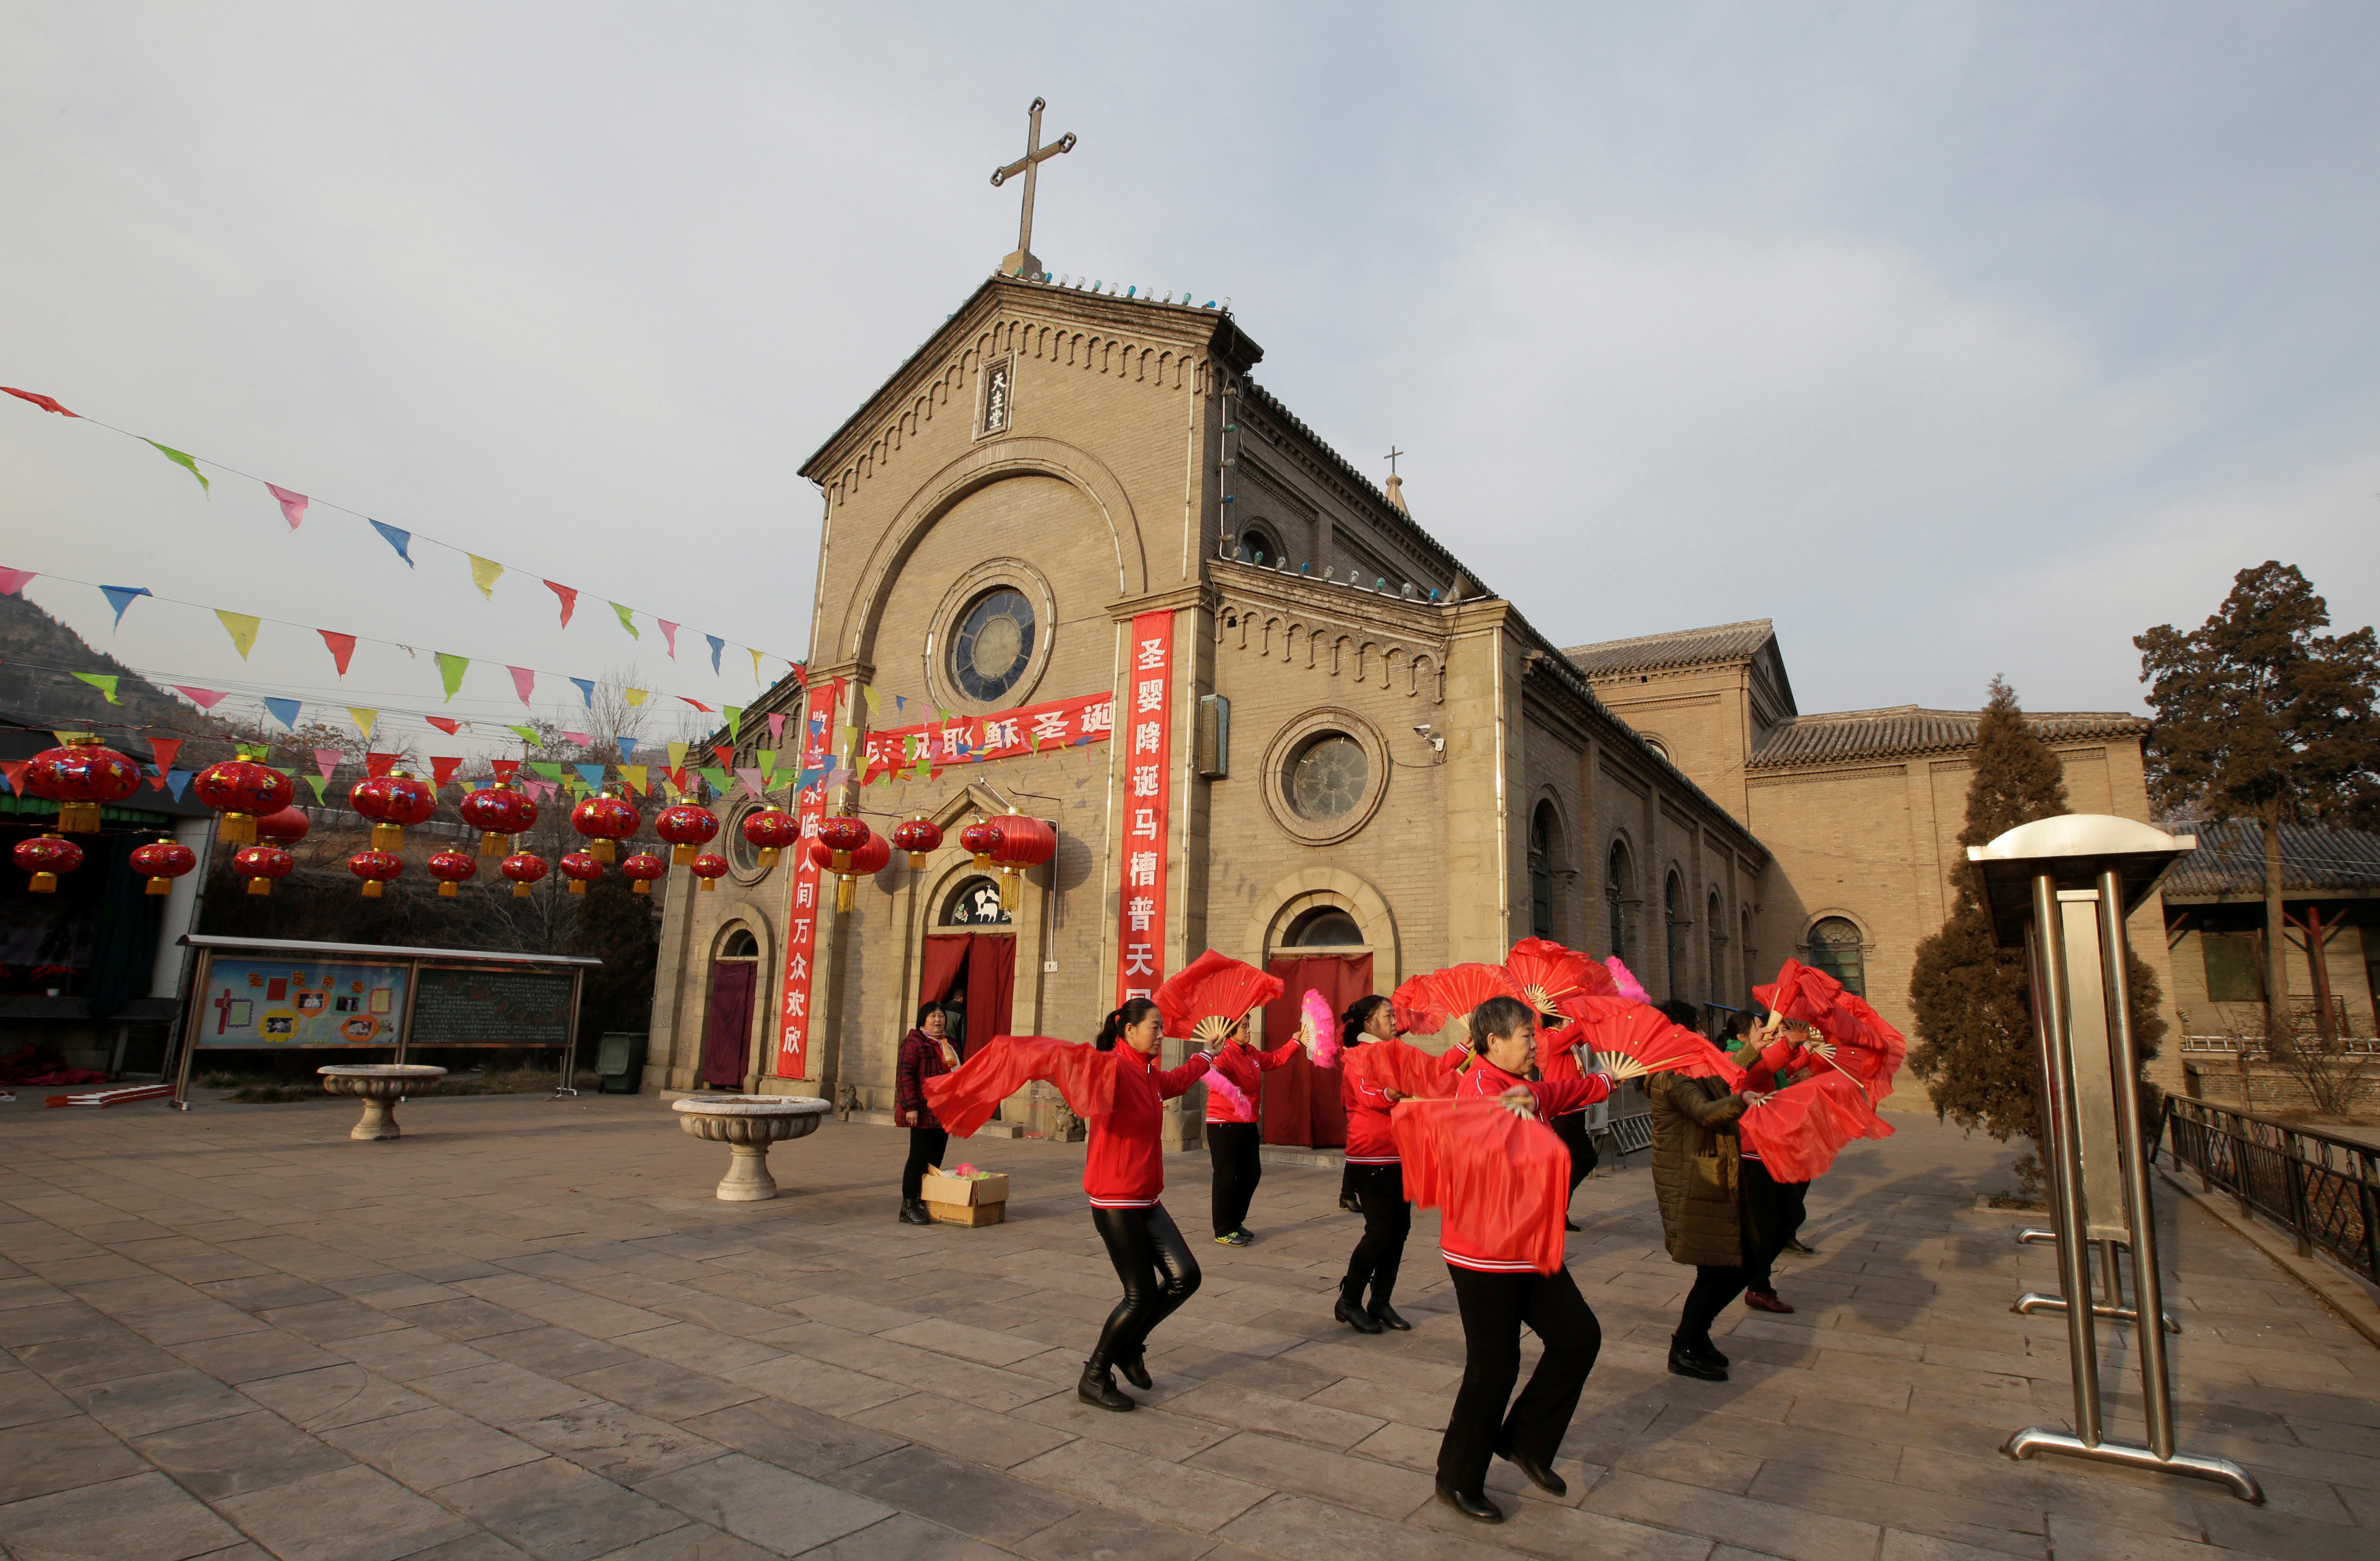 قرويون صينيون يرقصون خارج الكنيسة الكاثوليكية احتفالا بعيد الميلاد فى تاى يوان (1)